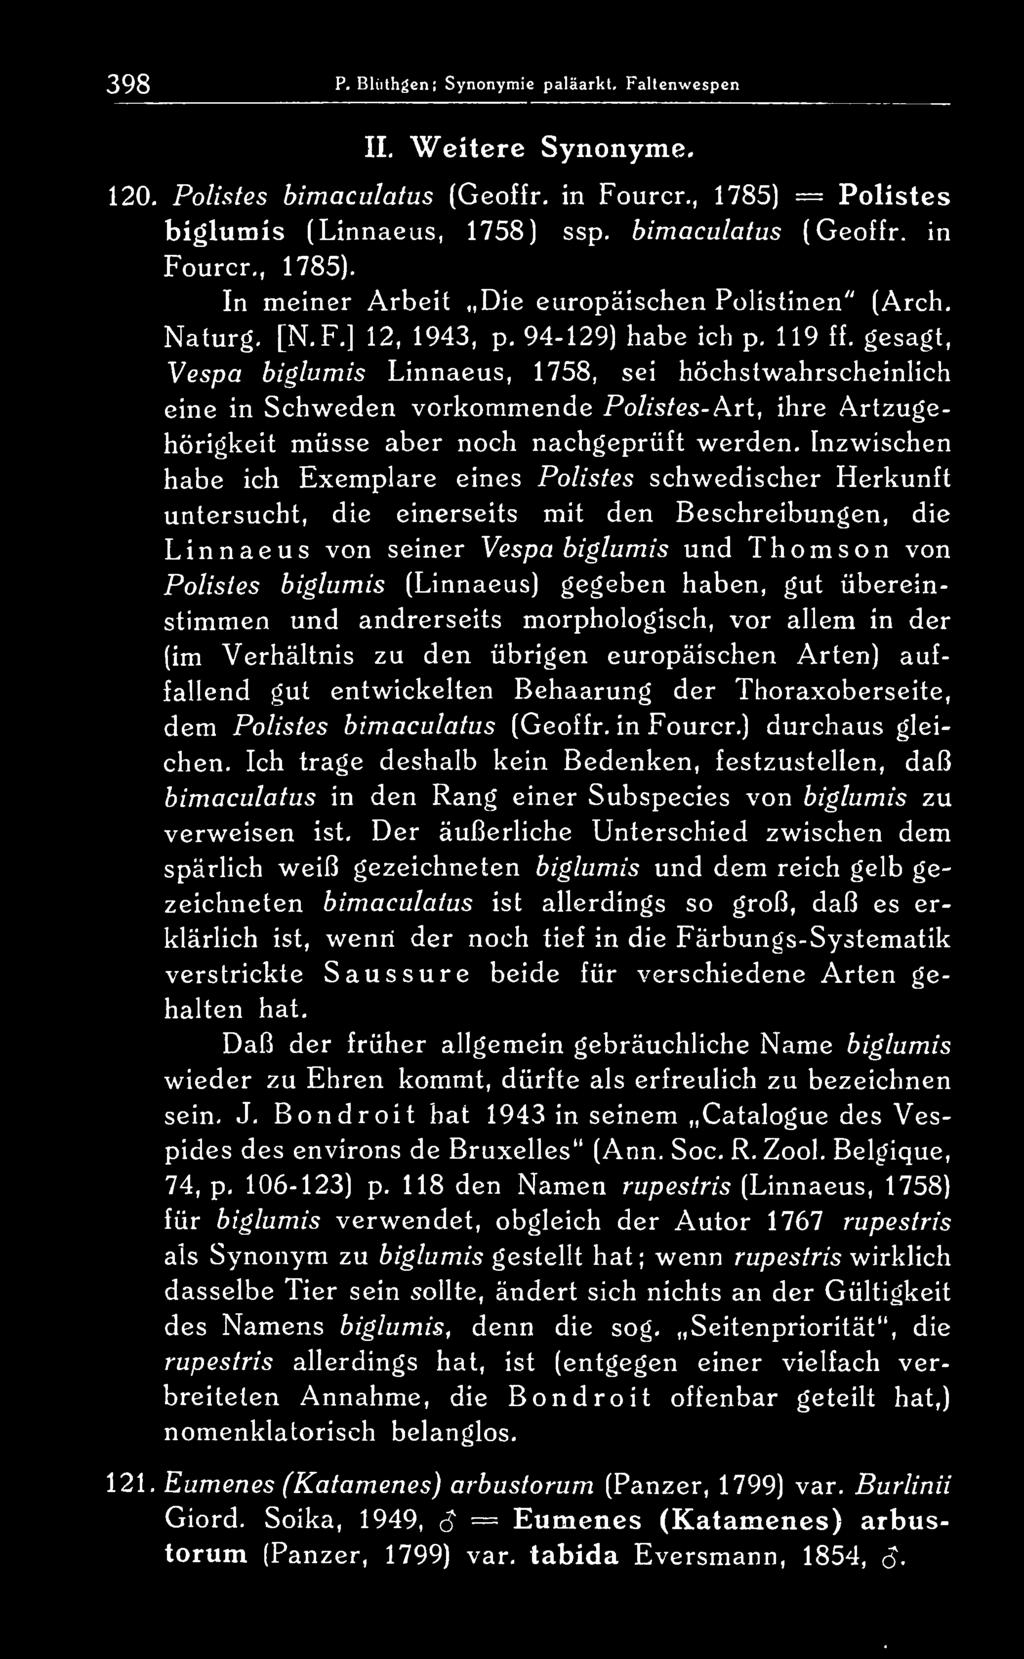 gesagt, Vespa biglumis Linnaeus, 1758, sei höchstwahrscheinuch eine in Schweden vorkommende Polistes- Art, ihre Artzugehörigkeit müsse aber noch nachgeprüft werden.